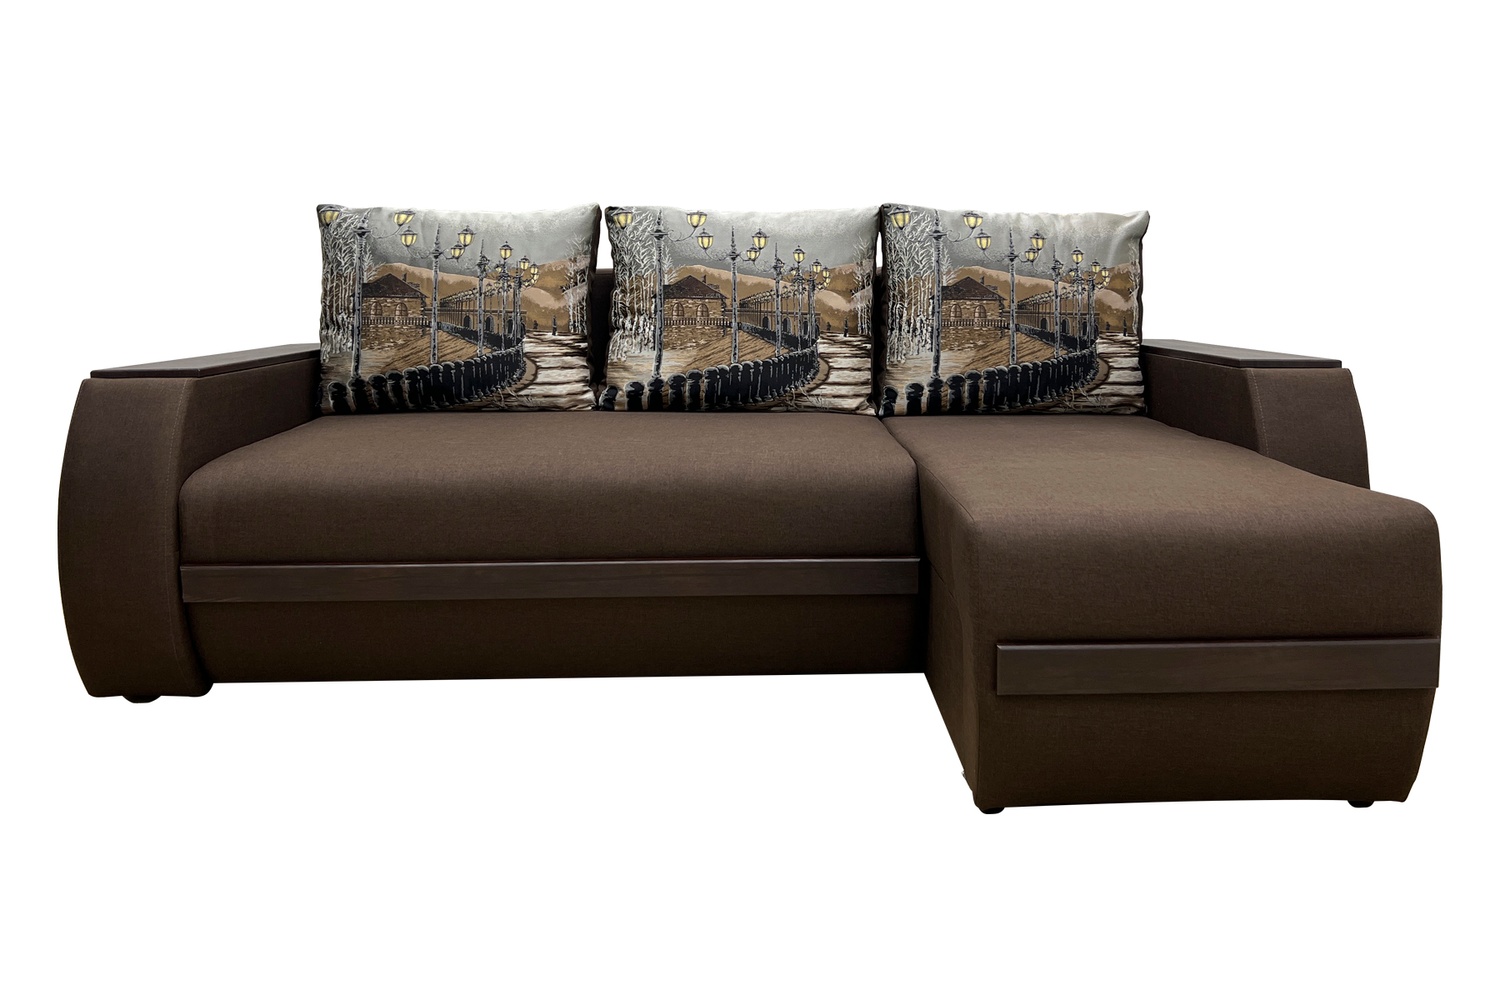 Угловой диван Фуджи 2 (Савана браун 03+ламбе, 242х168 см) IMI kfdj2-snb03-lmb фото